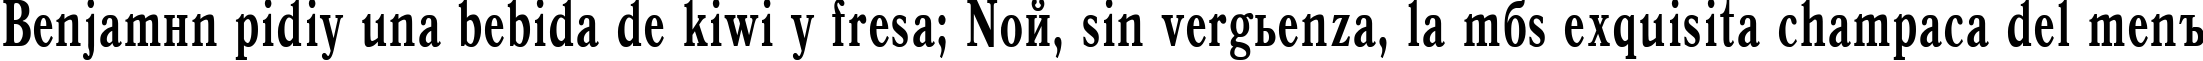 Пример написания шрифтом Antiqua Bold65b текста на испанском